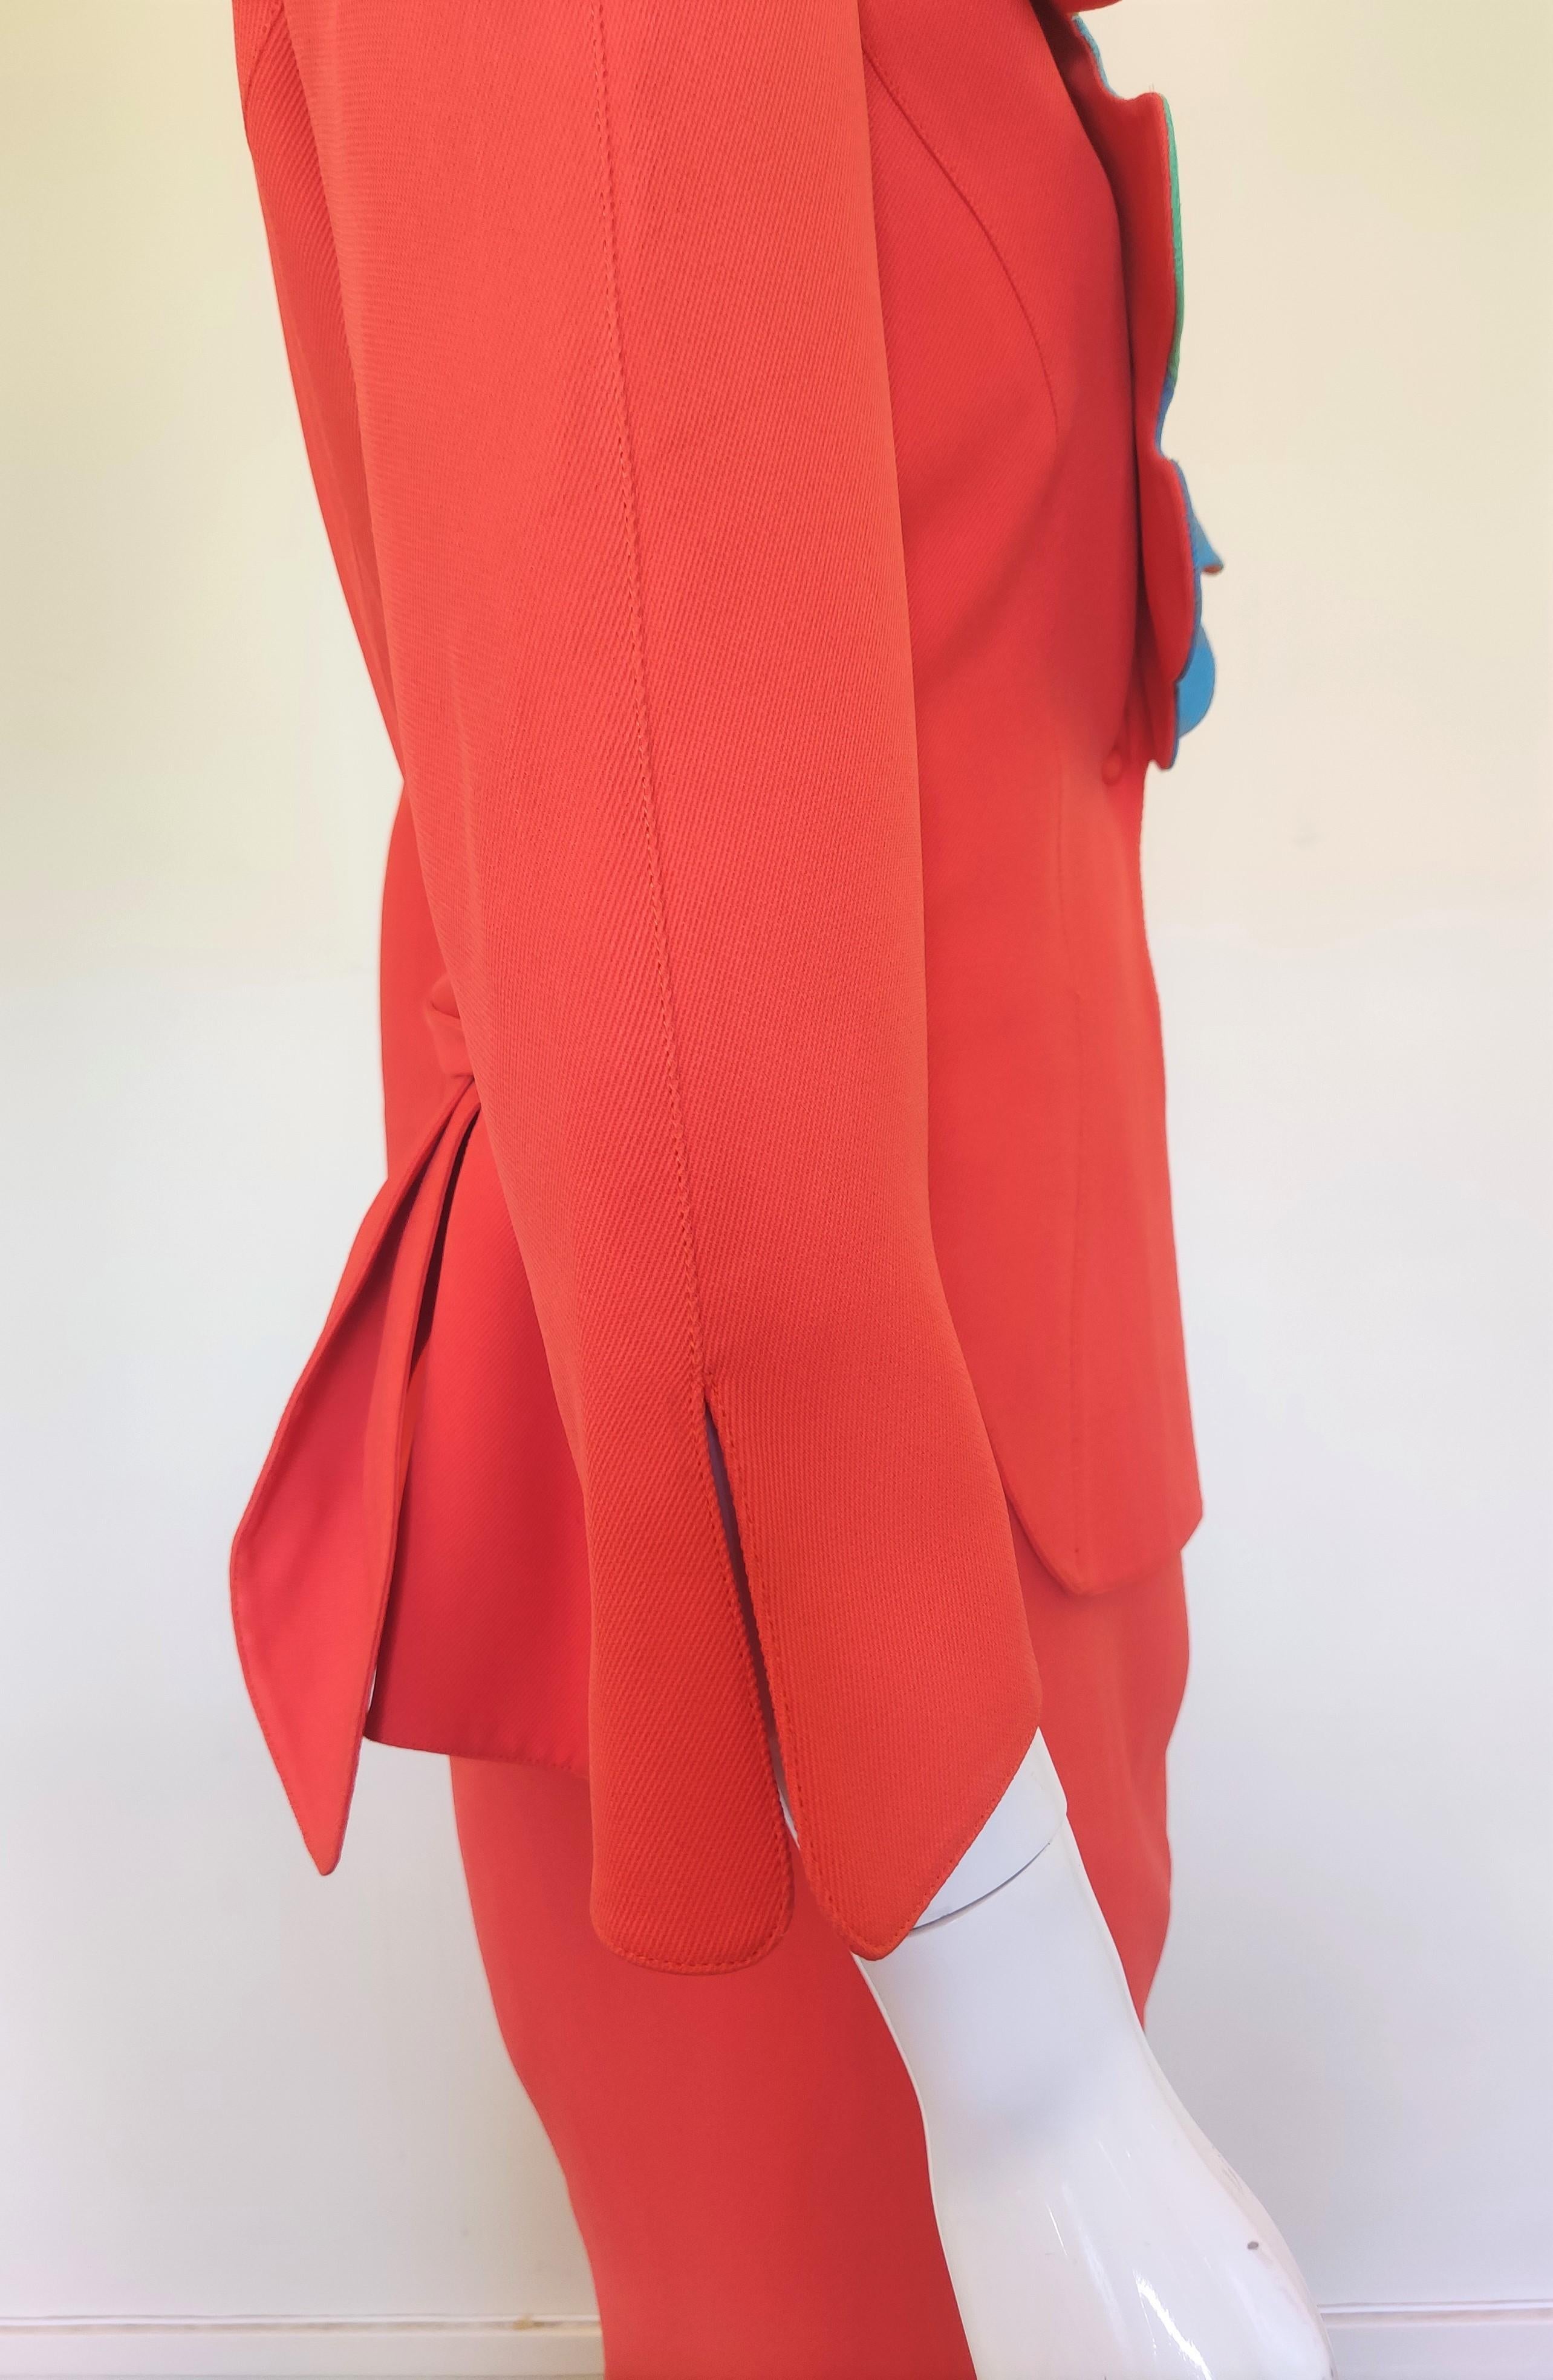 Thierry Mugler Rainbow Arc En Ciel S/S 1990 Couture Structured Ensemble Suit For Sale 10